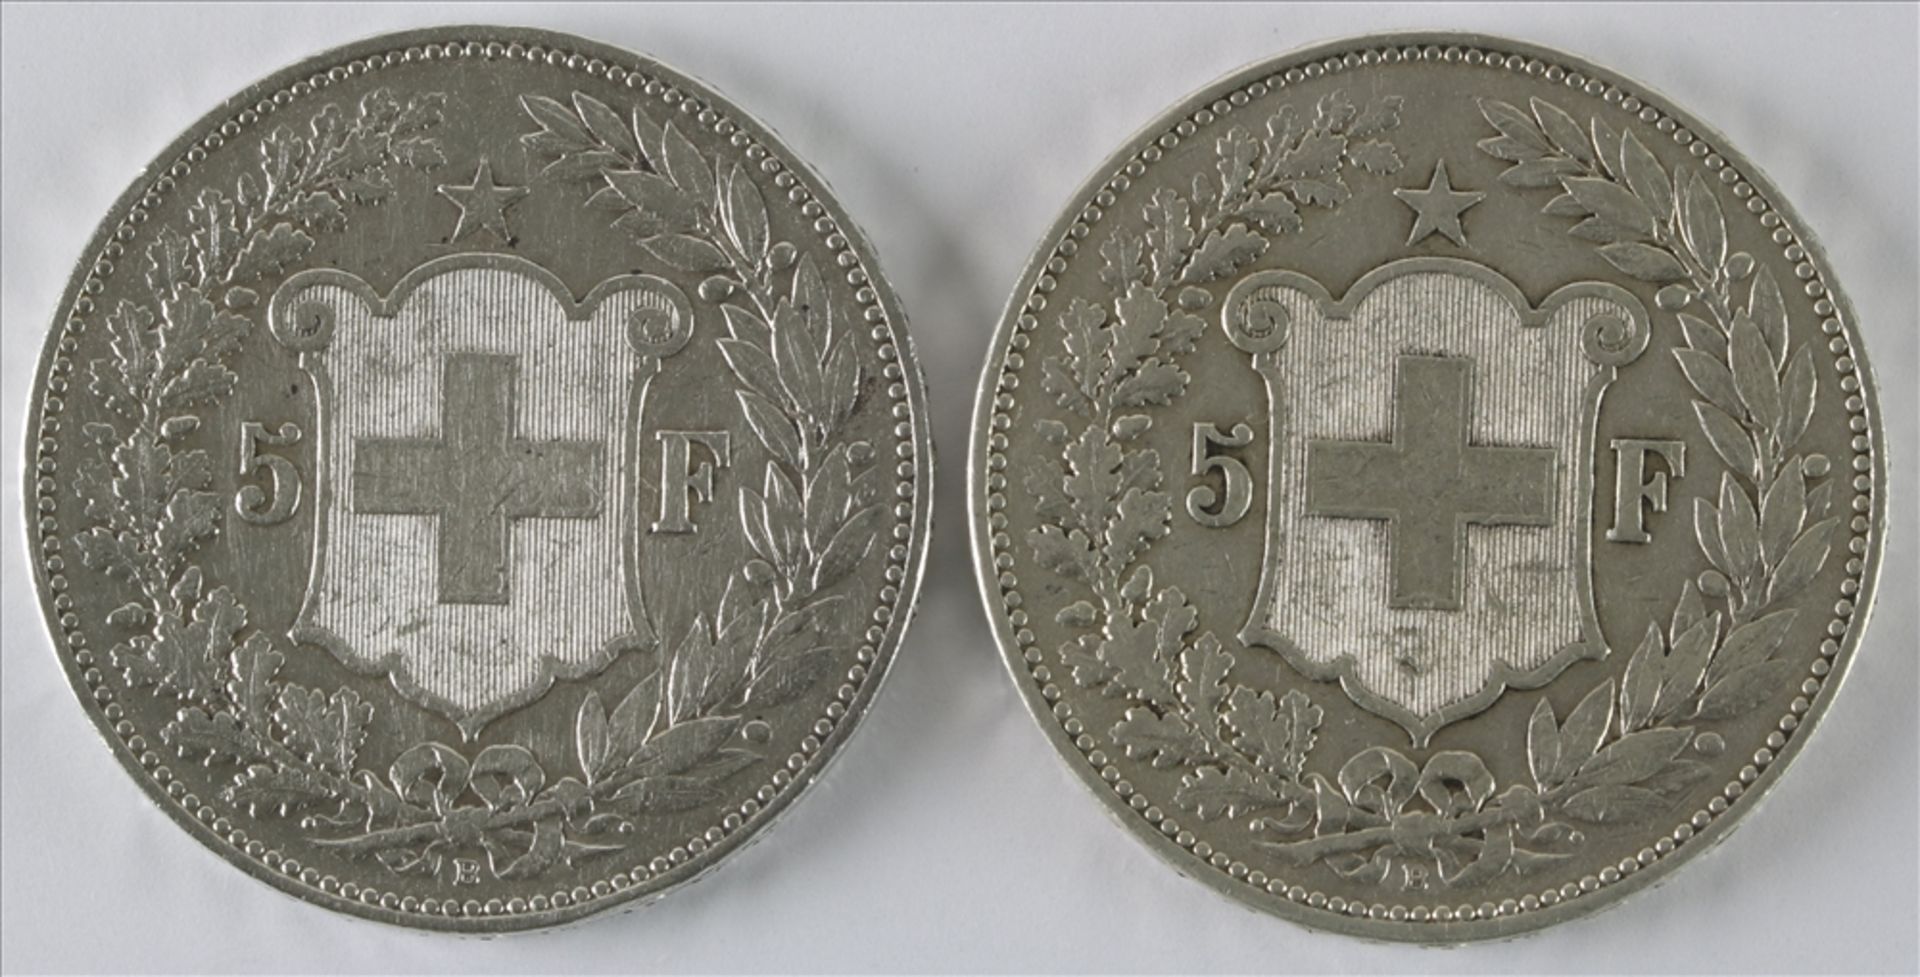 Zwei 5 Franken Münzen Schweiz, 1907 B. Durchmesser ca. 37 mm, Gewicht ca. 24,9 Gramm. Guter Zustand. - Bild 2 aus 2